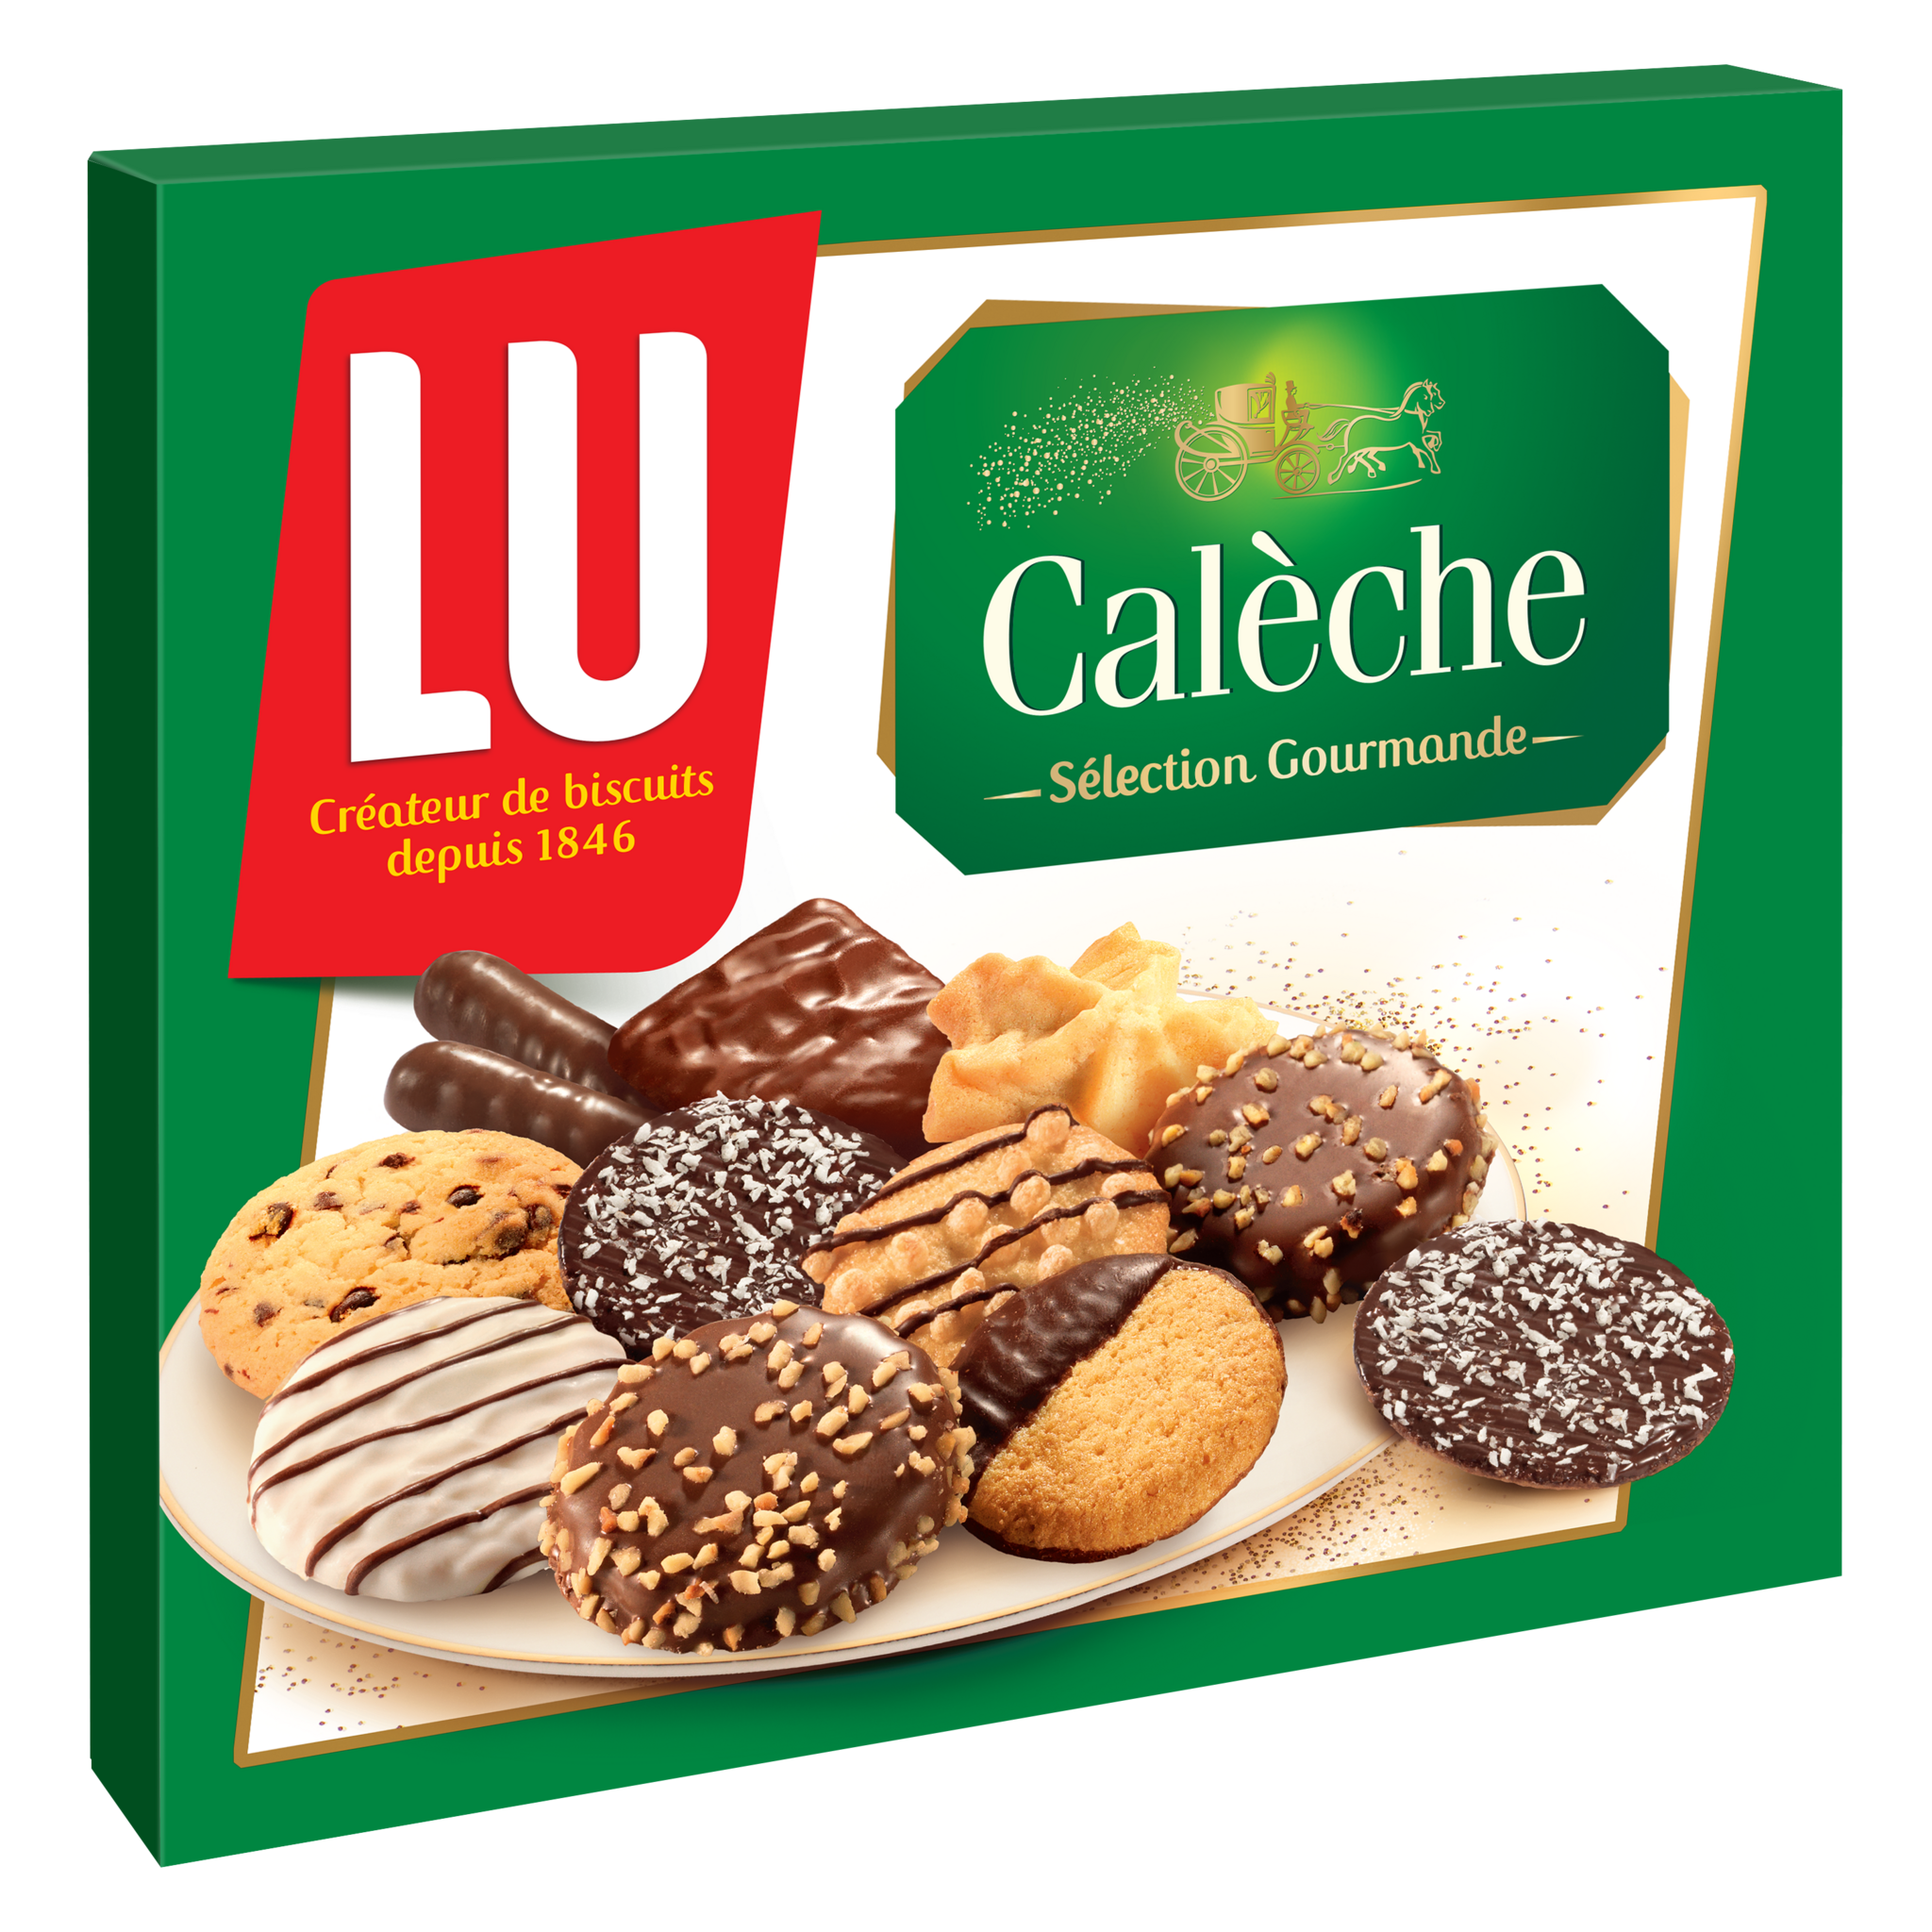 AUCHAN Assortiment de biscuits fins au chocolat belge x80 pas cher